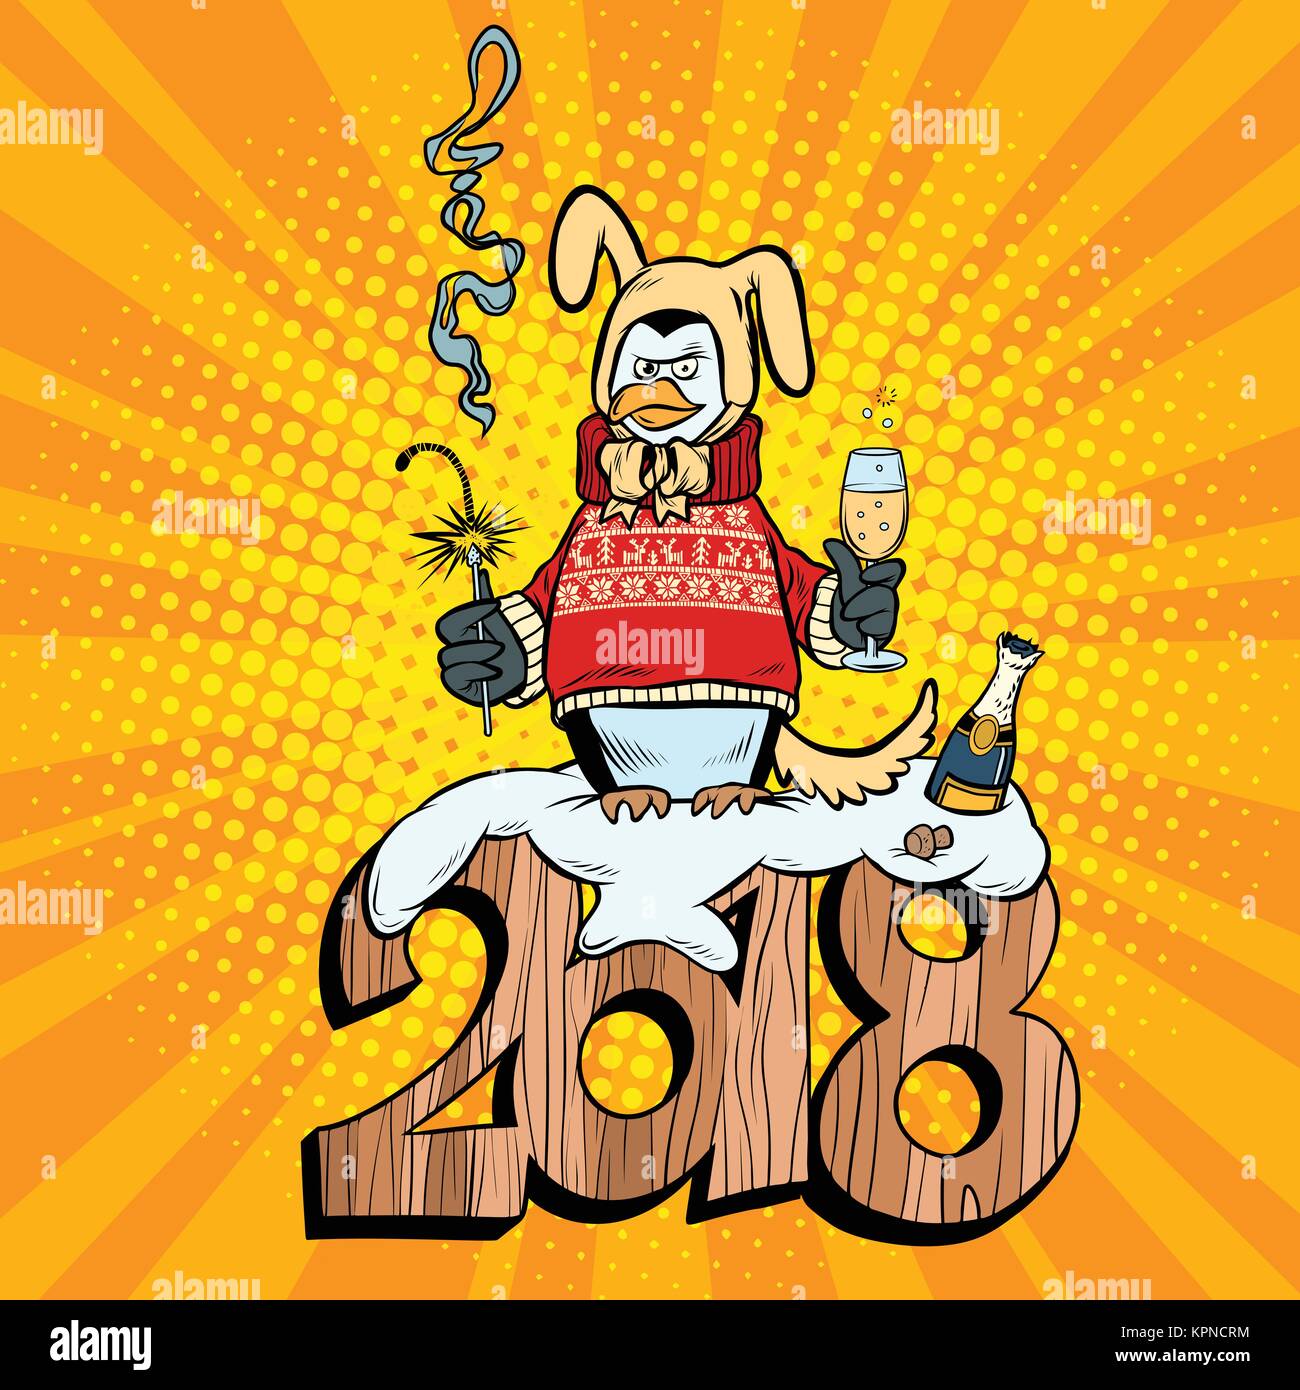 2018 Neues Jahr, penguin Anzug gelbe Erde Hund. Sekt und Wunderkerzen.  Comic cartoon Pop Art retro Vektor illustration Zeichnung  Stock-Vektorgrafik - Alamy